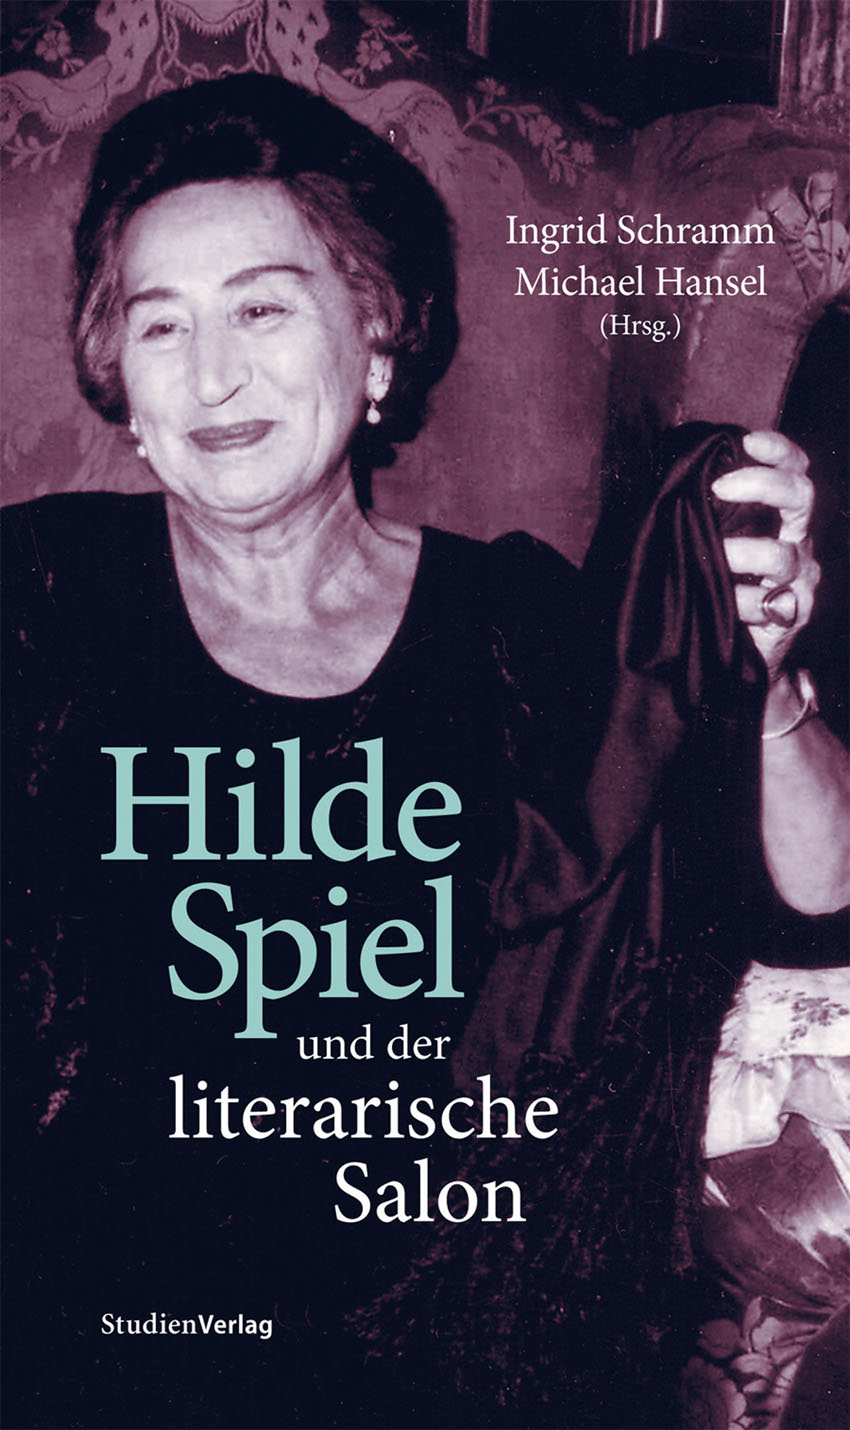 Hilde Spiel und der literarische Salon - Ingrid Schramm, Michael Hansel